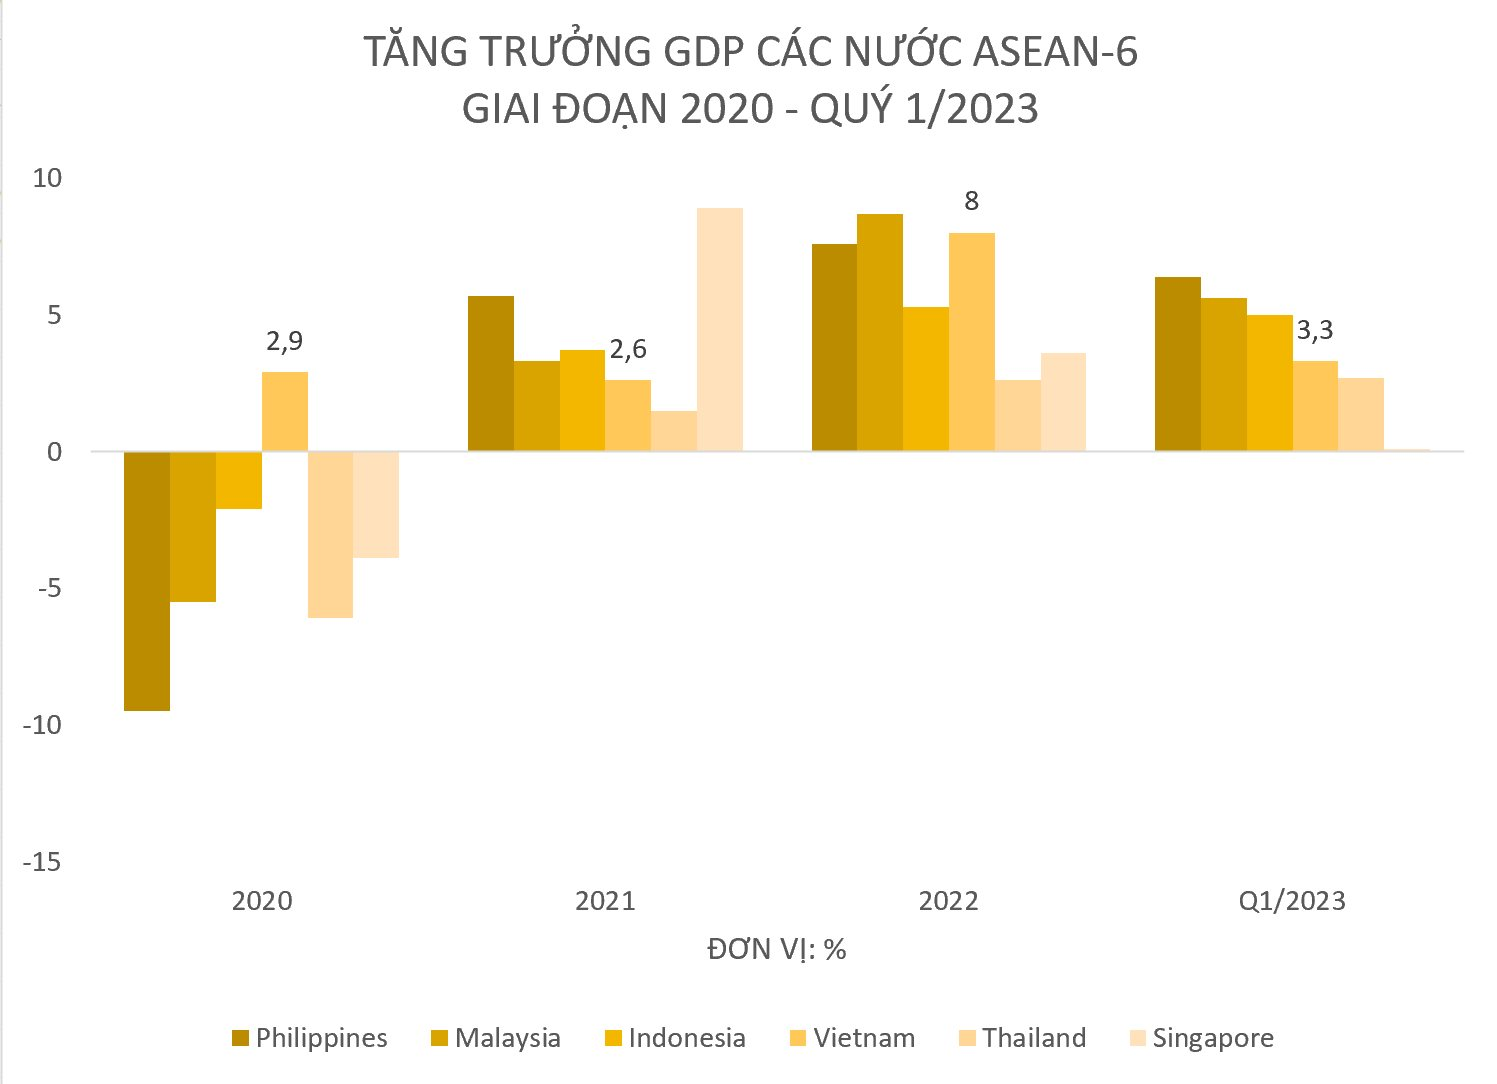 Toàn cảnh tăng trưởng GDP quý 1/2023 của ASEAN-6: Singapore chót bảng, Việt Nam xếp thứ mấy? - Ảnh 1.